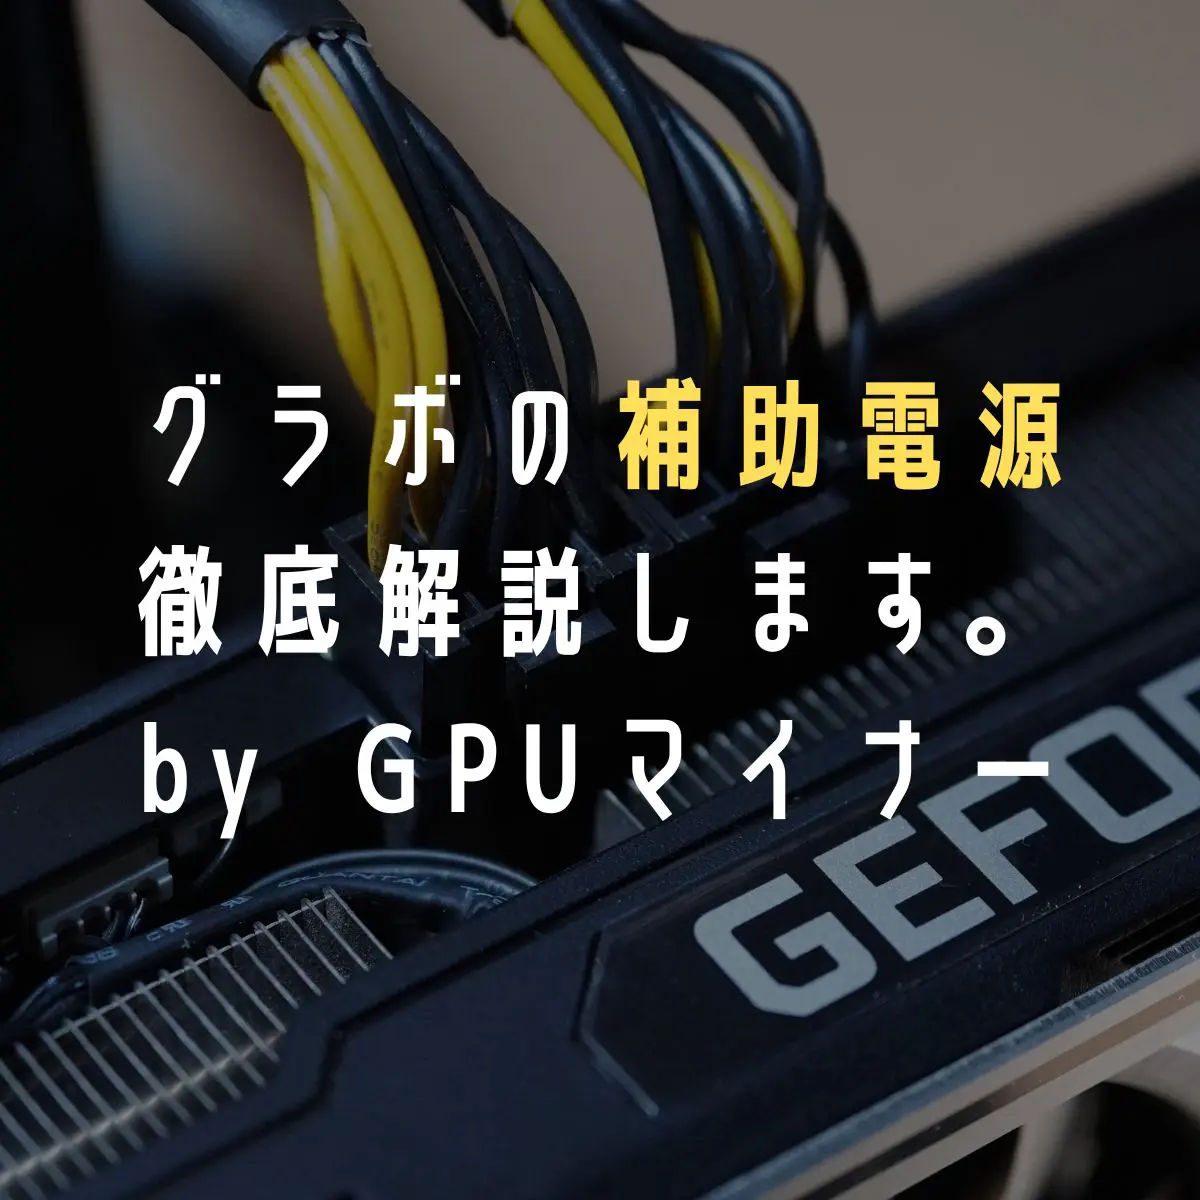 PCIe GPUグラボ補助電源ケーブル 6ピン→8ピン変換ケーブル 15cm長